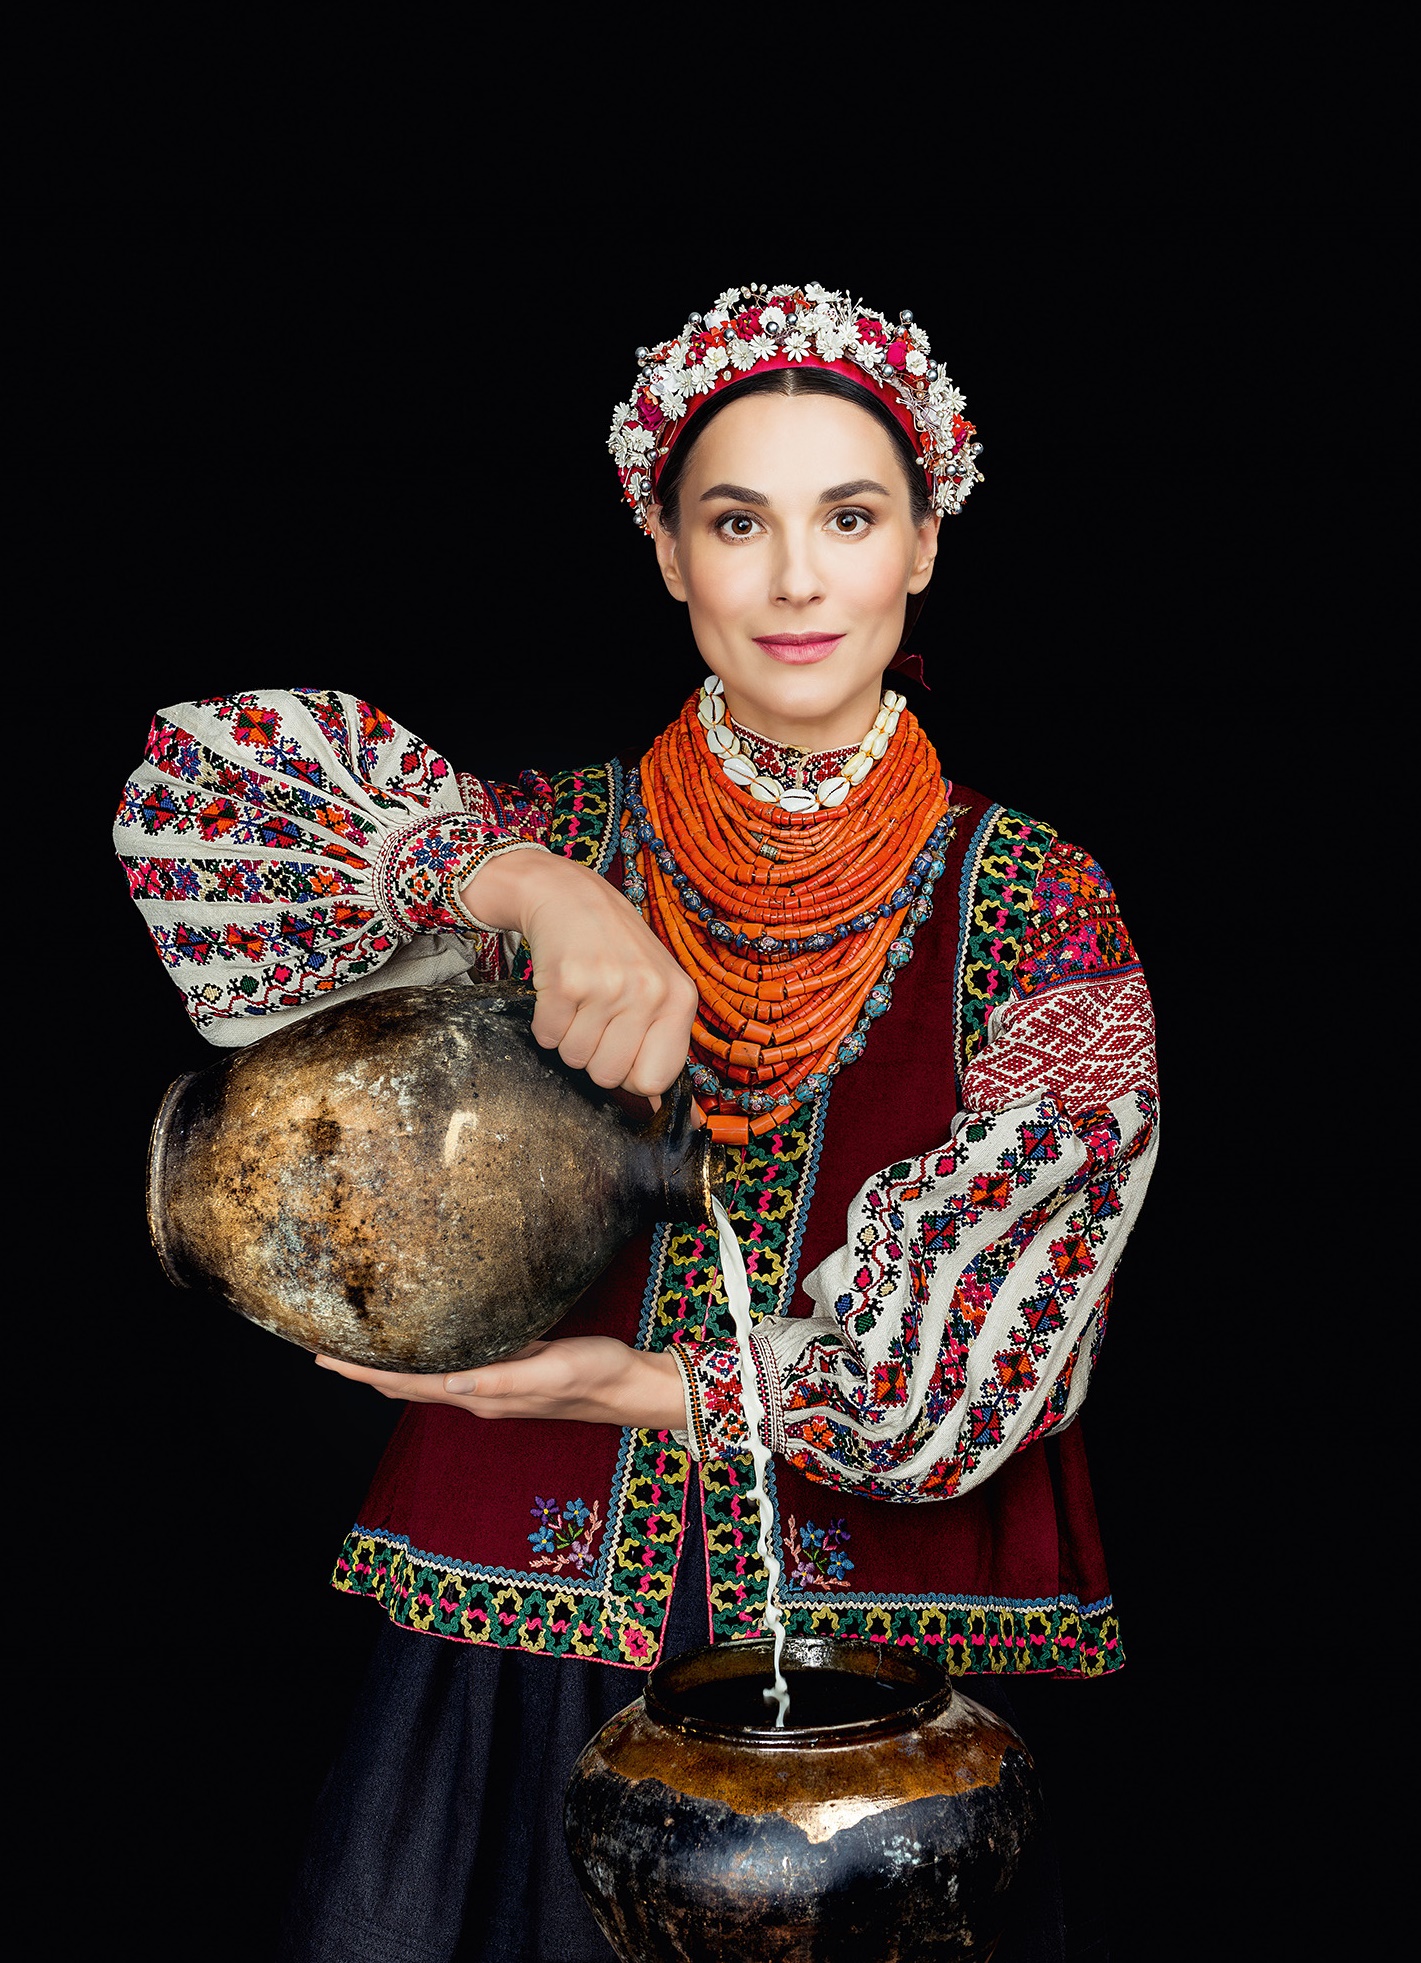 Кароль, Фреймут, Єфросиніна вбралися у розкішне українське вбрання - фото 3